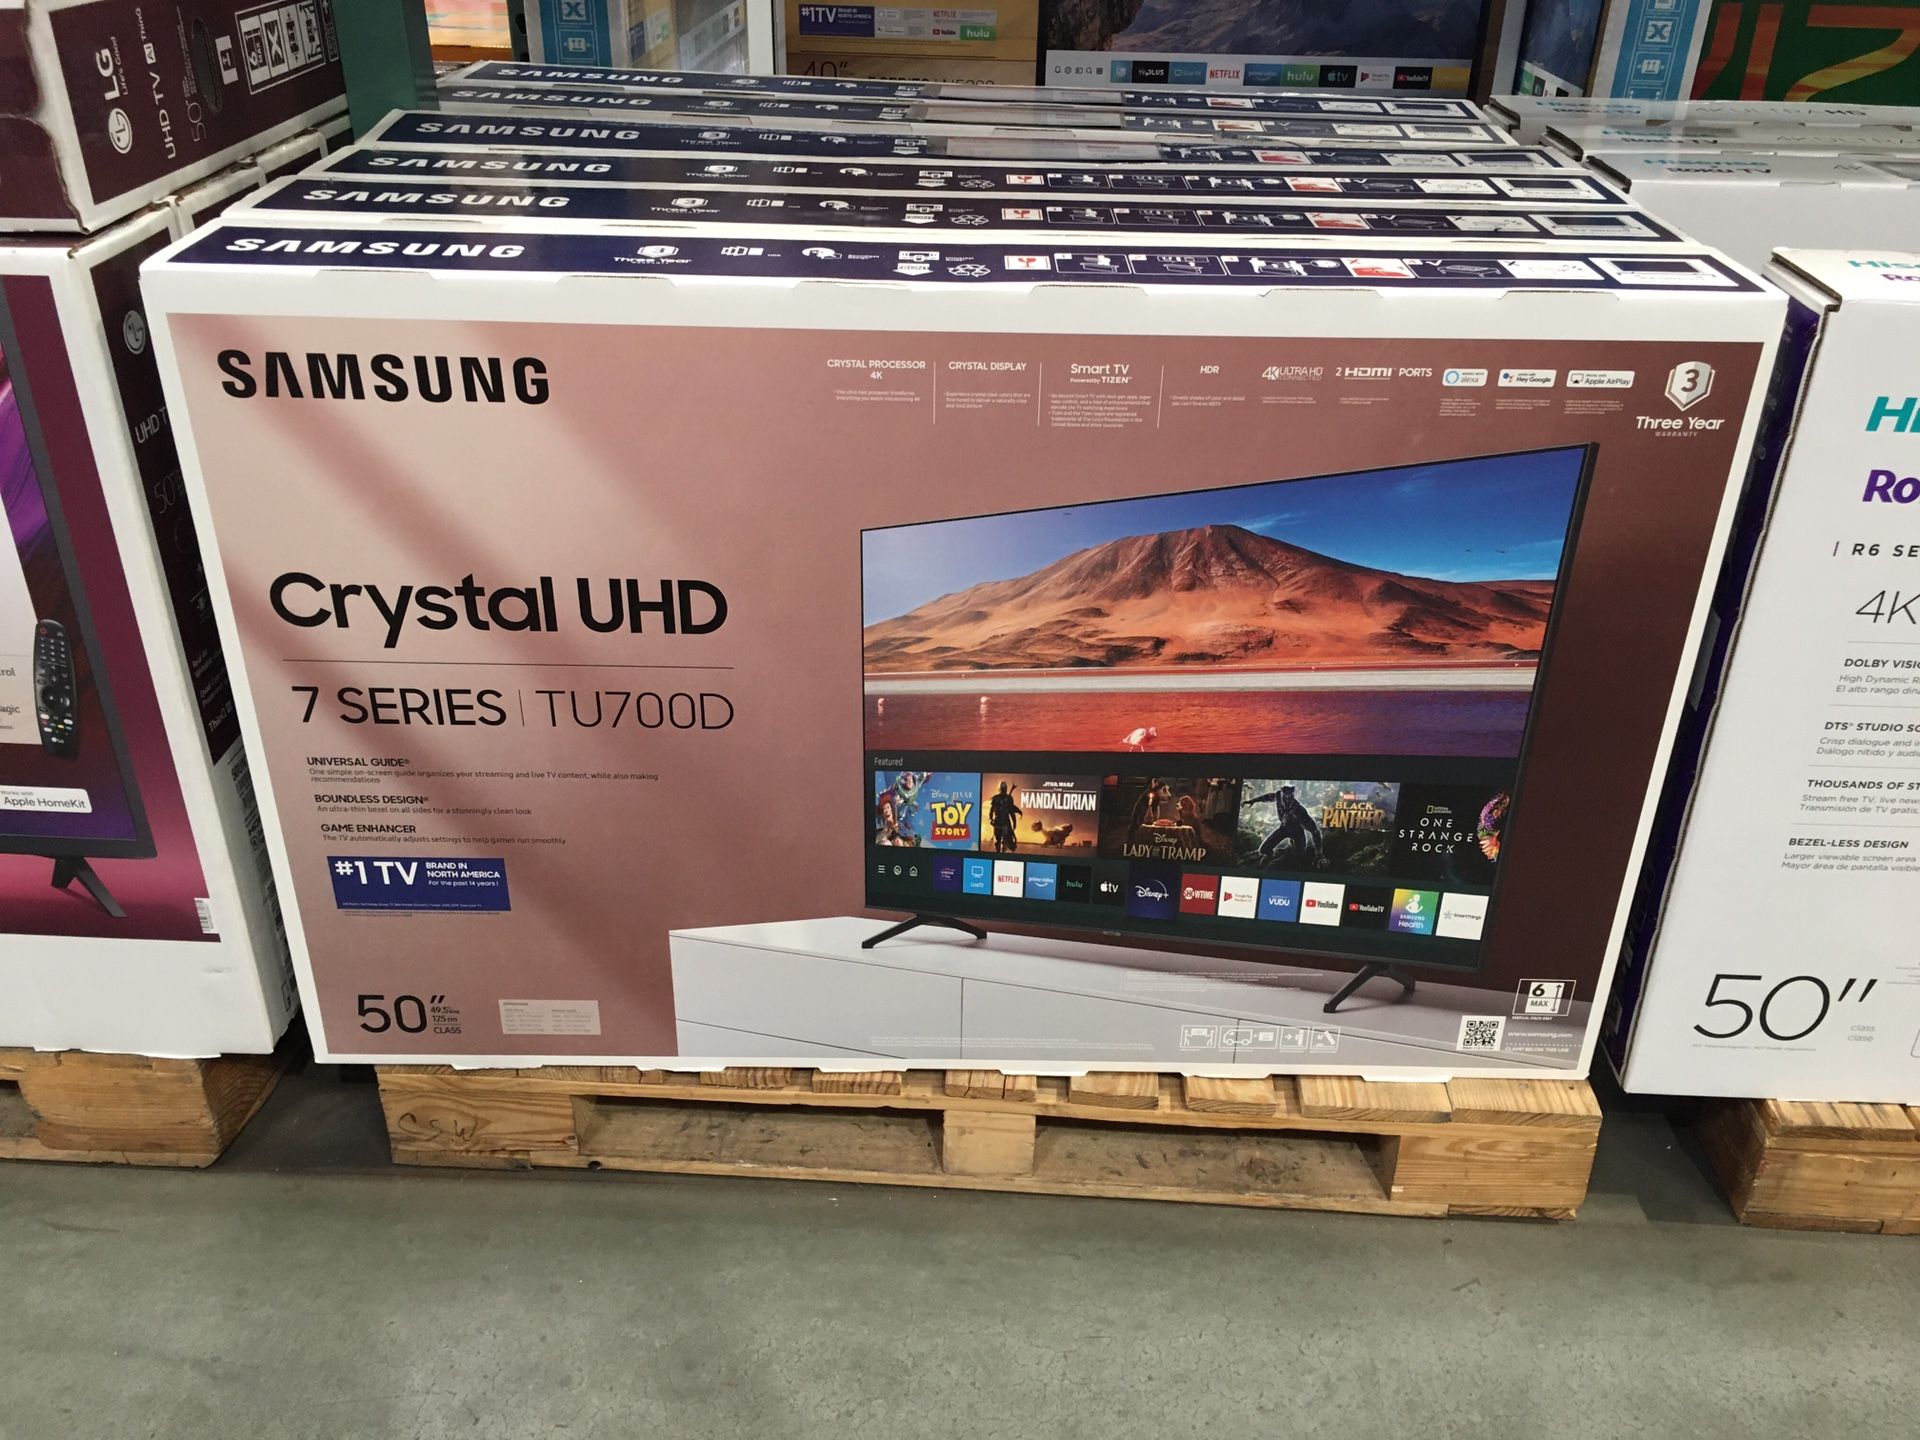 50” Samsung 4k uhd crystal hdr smart TVs 7 series